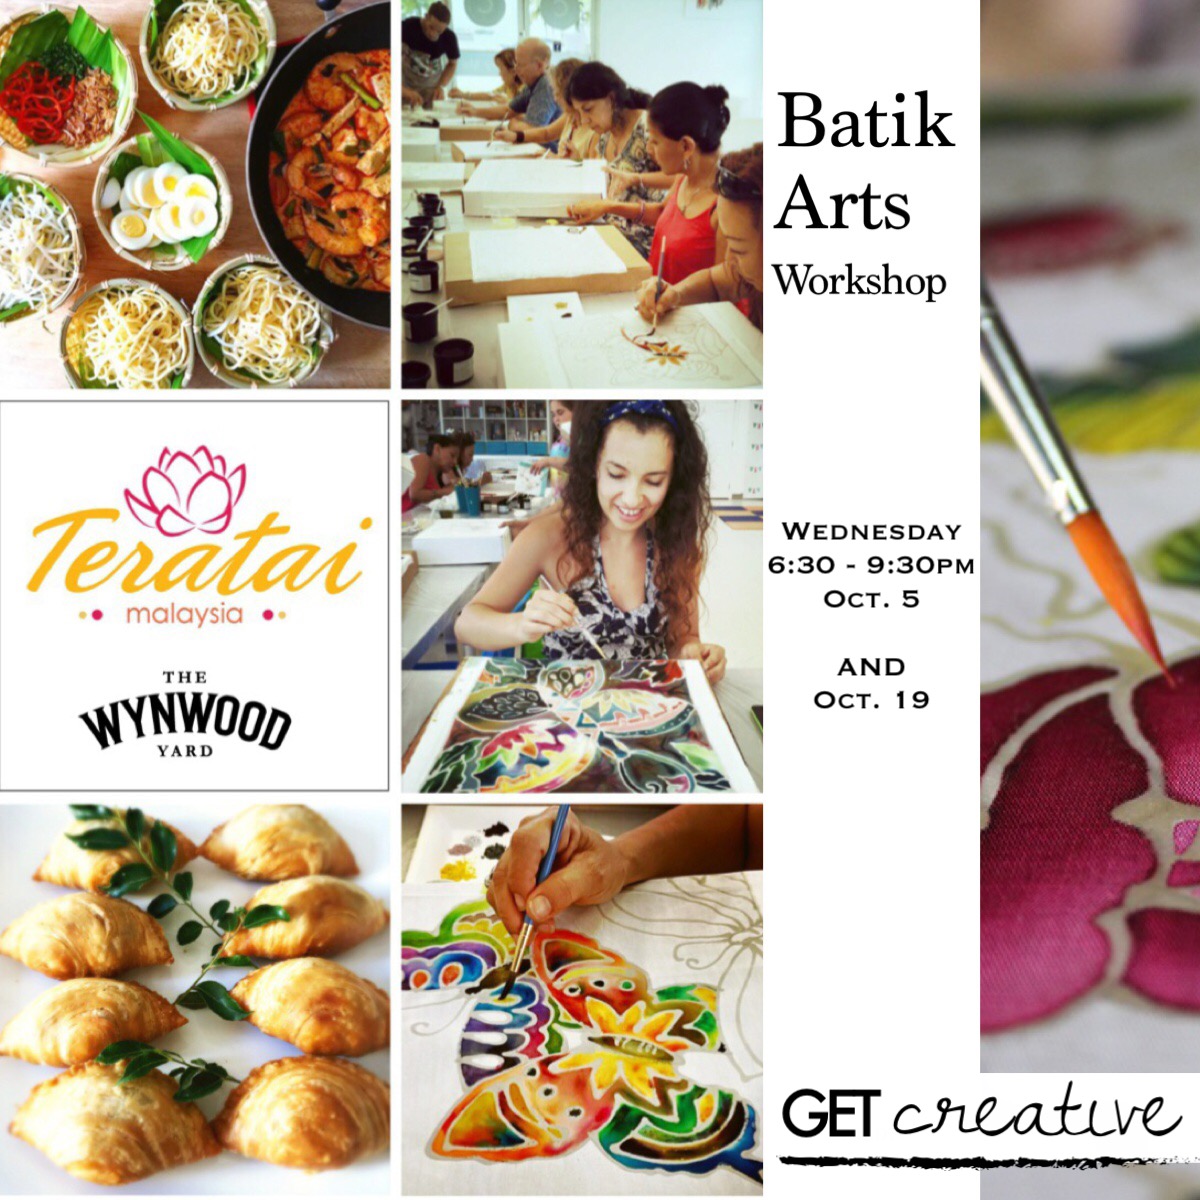 batik-arts-workshop-october-5-october-19-2016